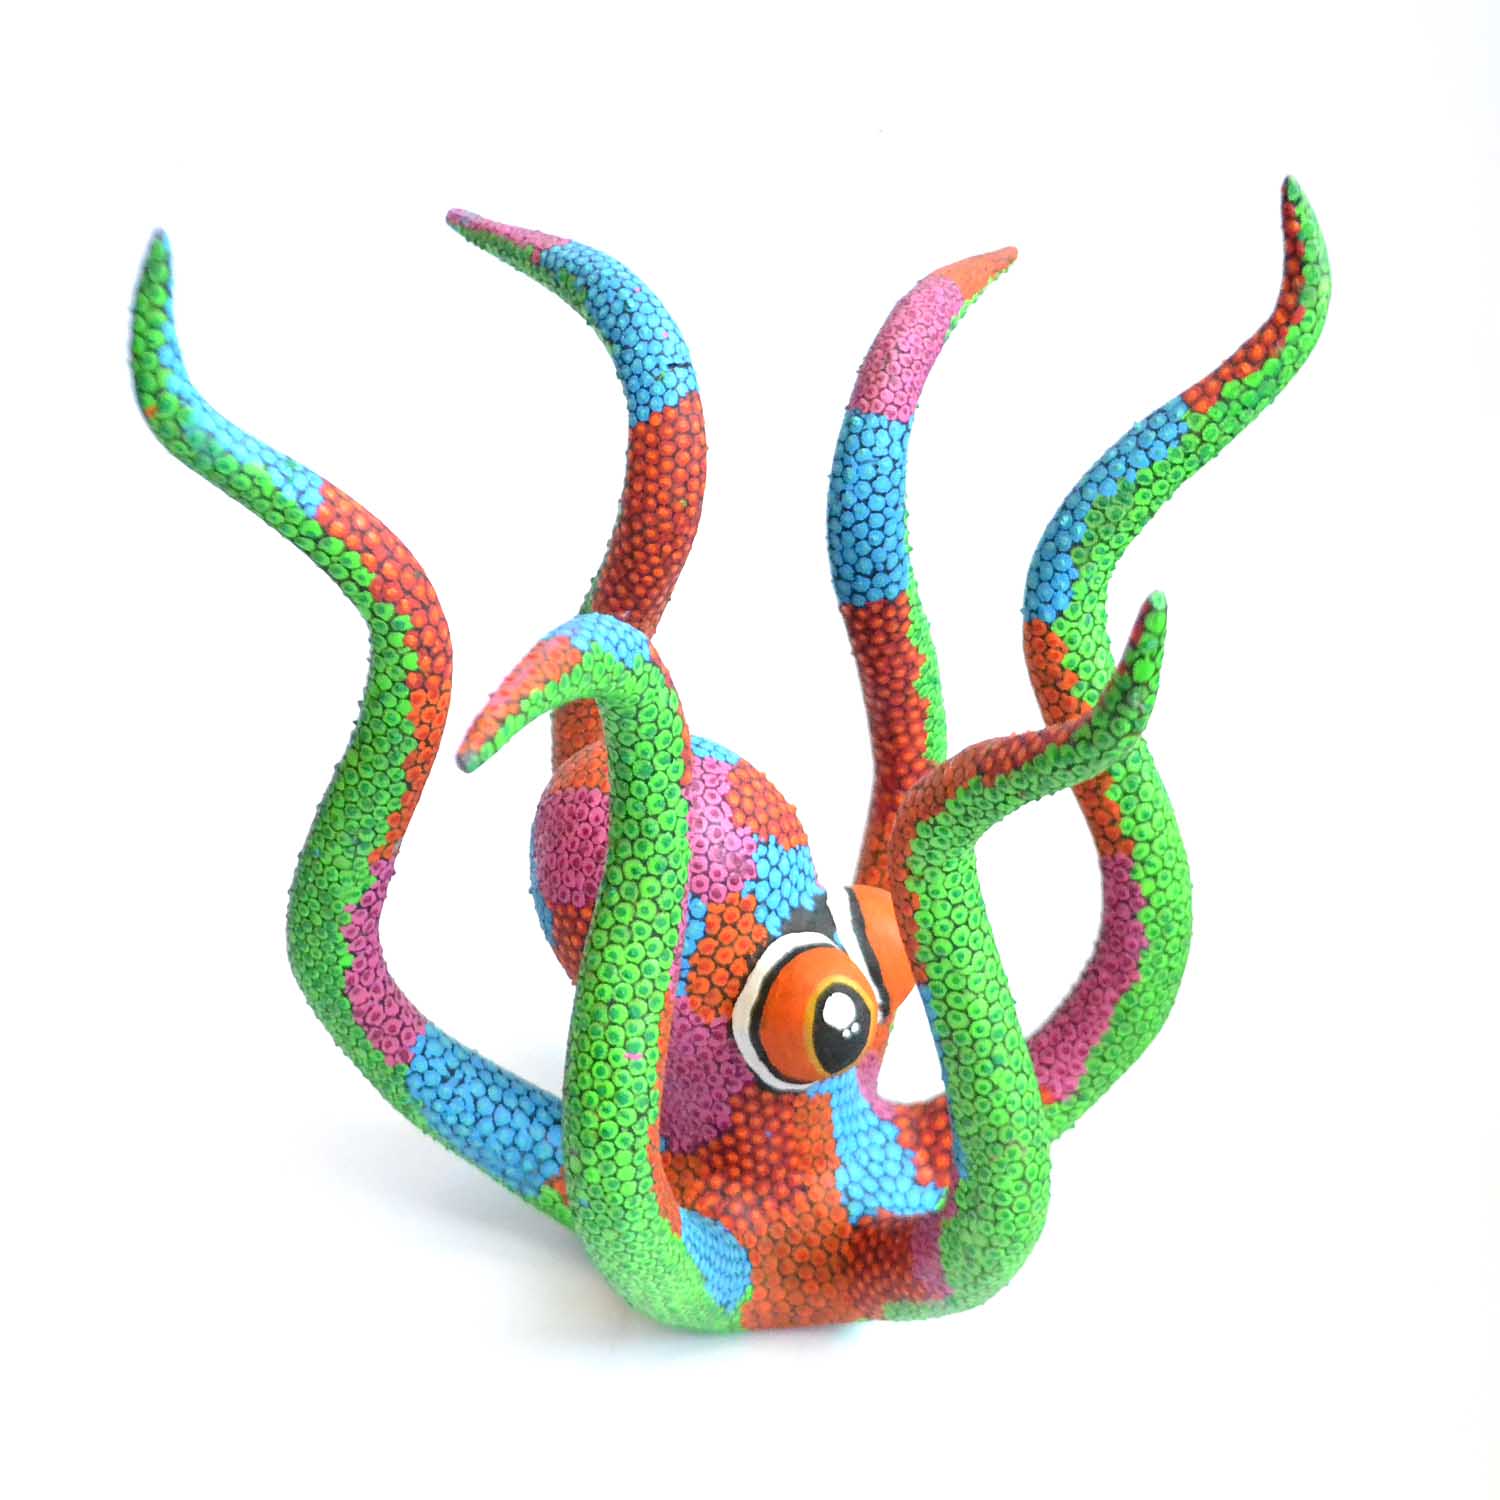 Pulpo - Octopus